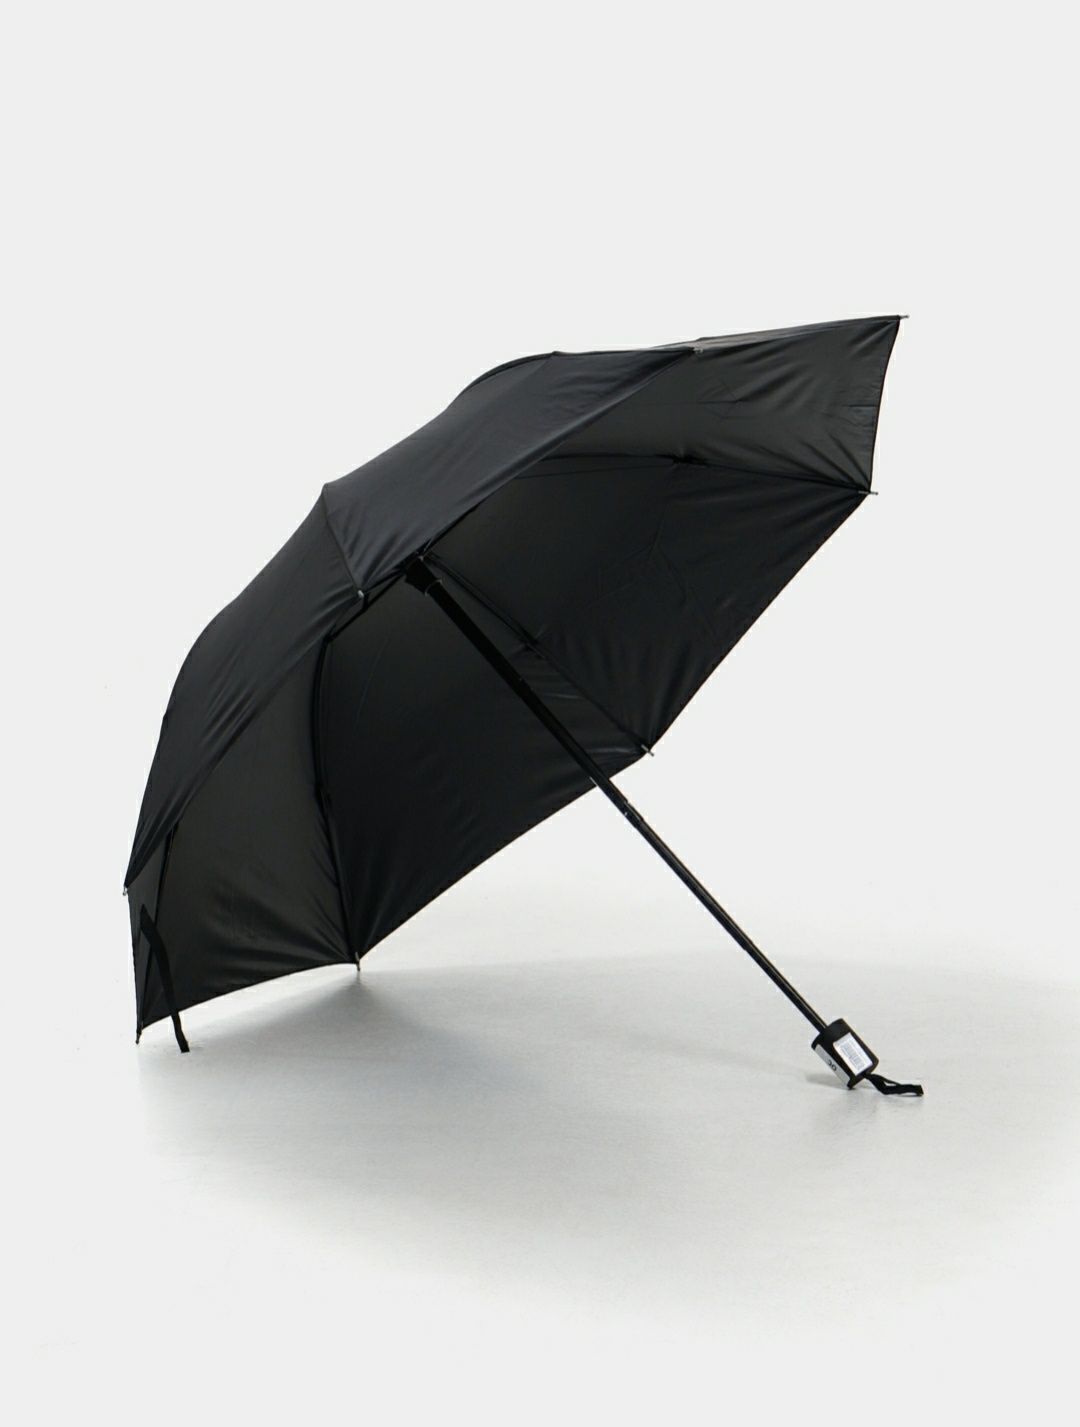 Семейный зонт складной автоматический унисекс, для мужчин и женщин